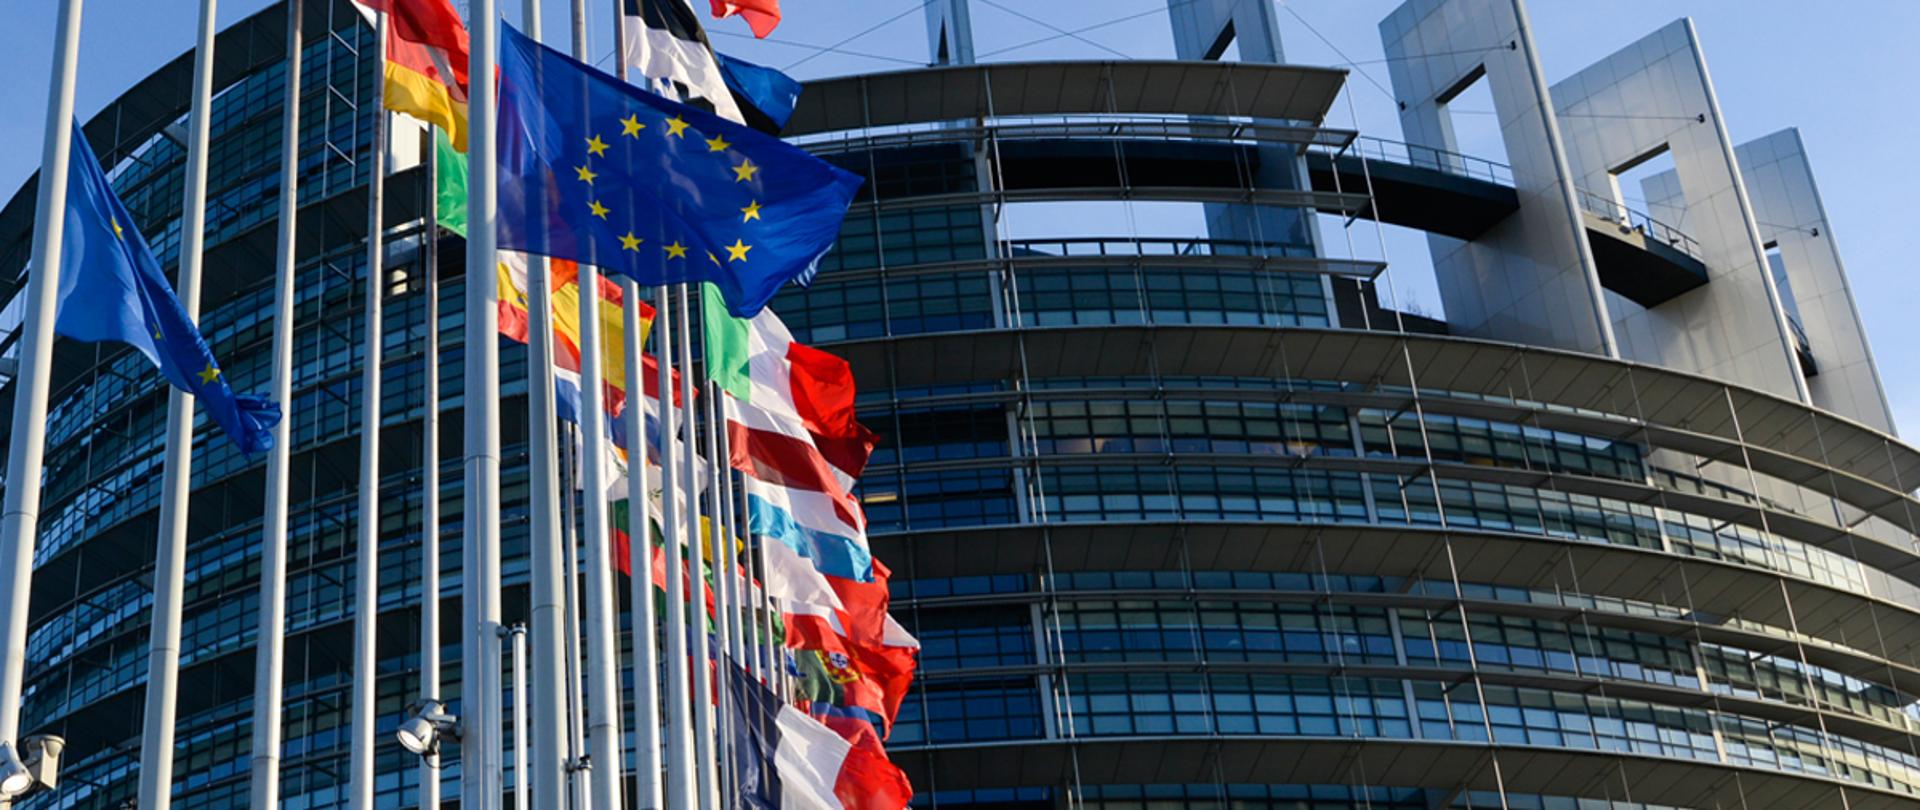 Flagi państwowe na tle budynku parlamentu europejskiego wzniesione na masztach